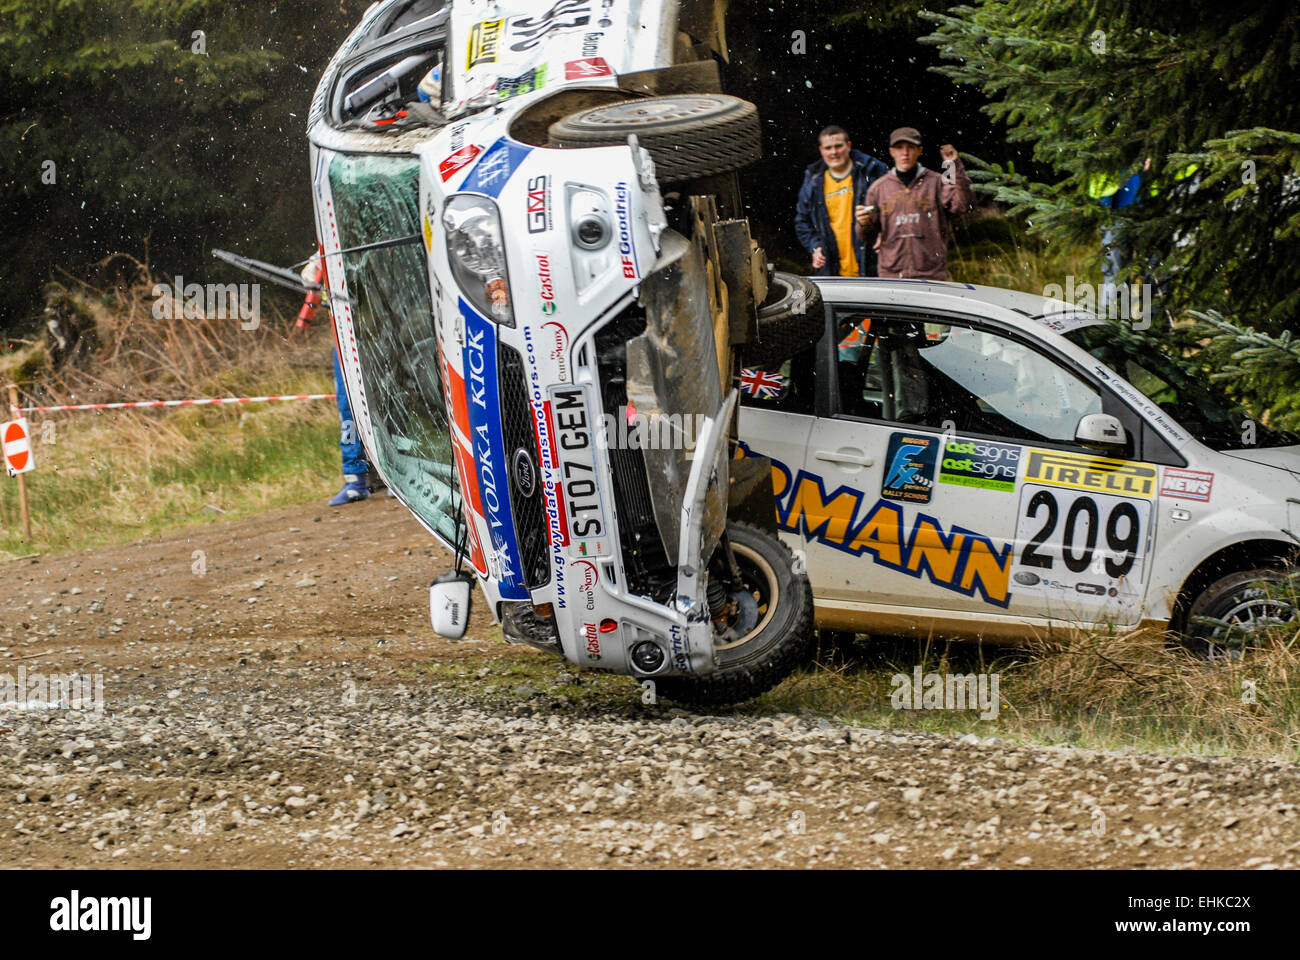 Elfyn Evans rollt seinen Ford Fiesta 2007 Pirelli internationale Rallye, das sind die einzigen Fotos des Vorfalls. Stockfoto